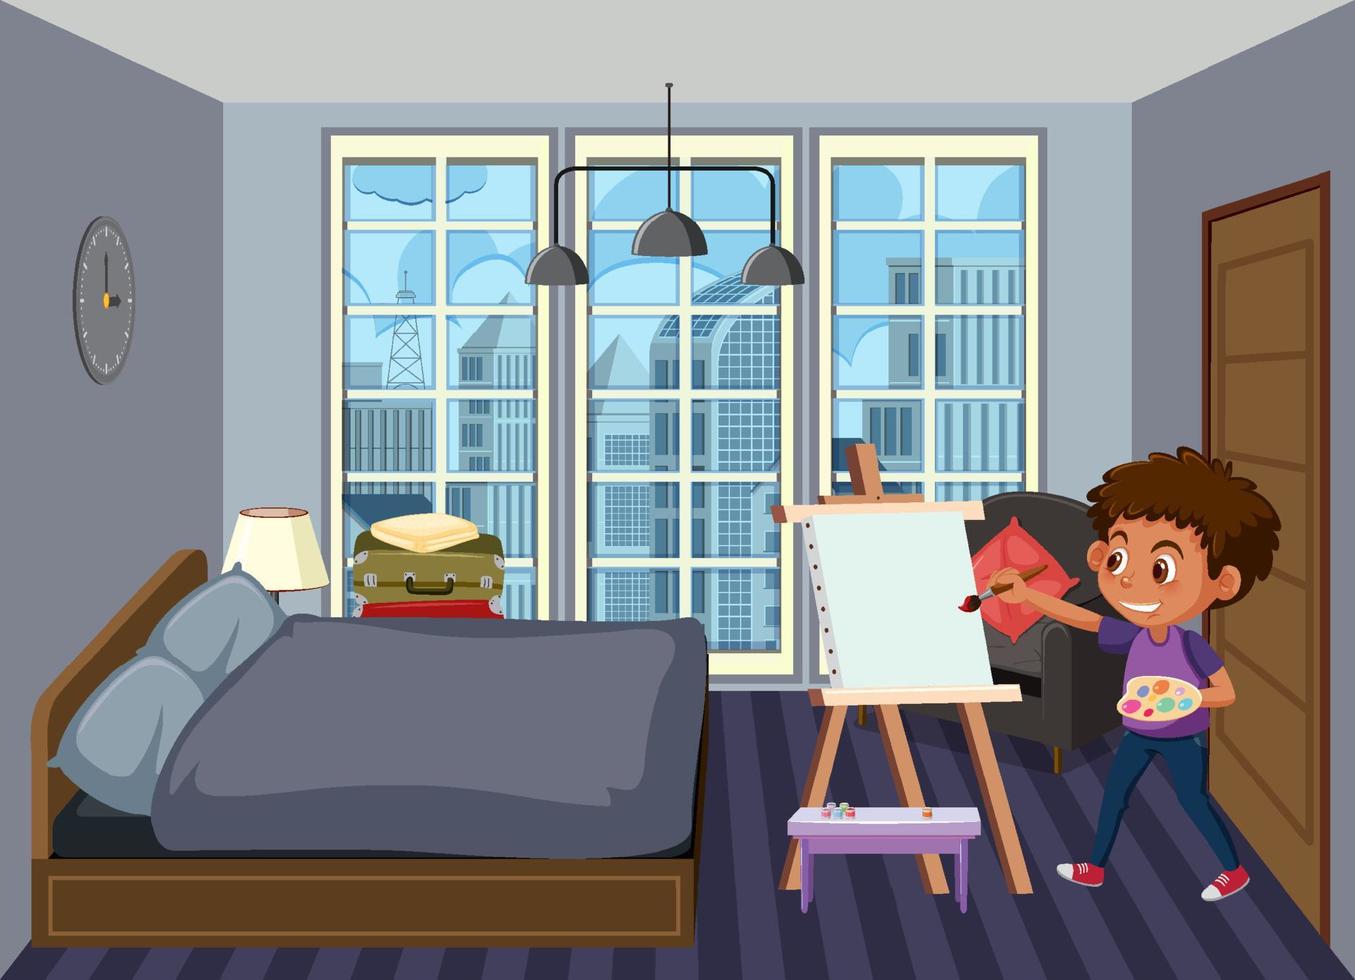 scena della camera da letto con il personaggio dei cartoni animati dei bambini vettore